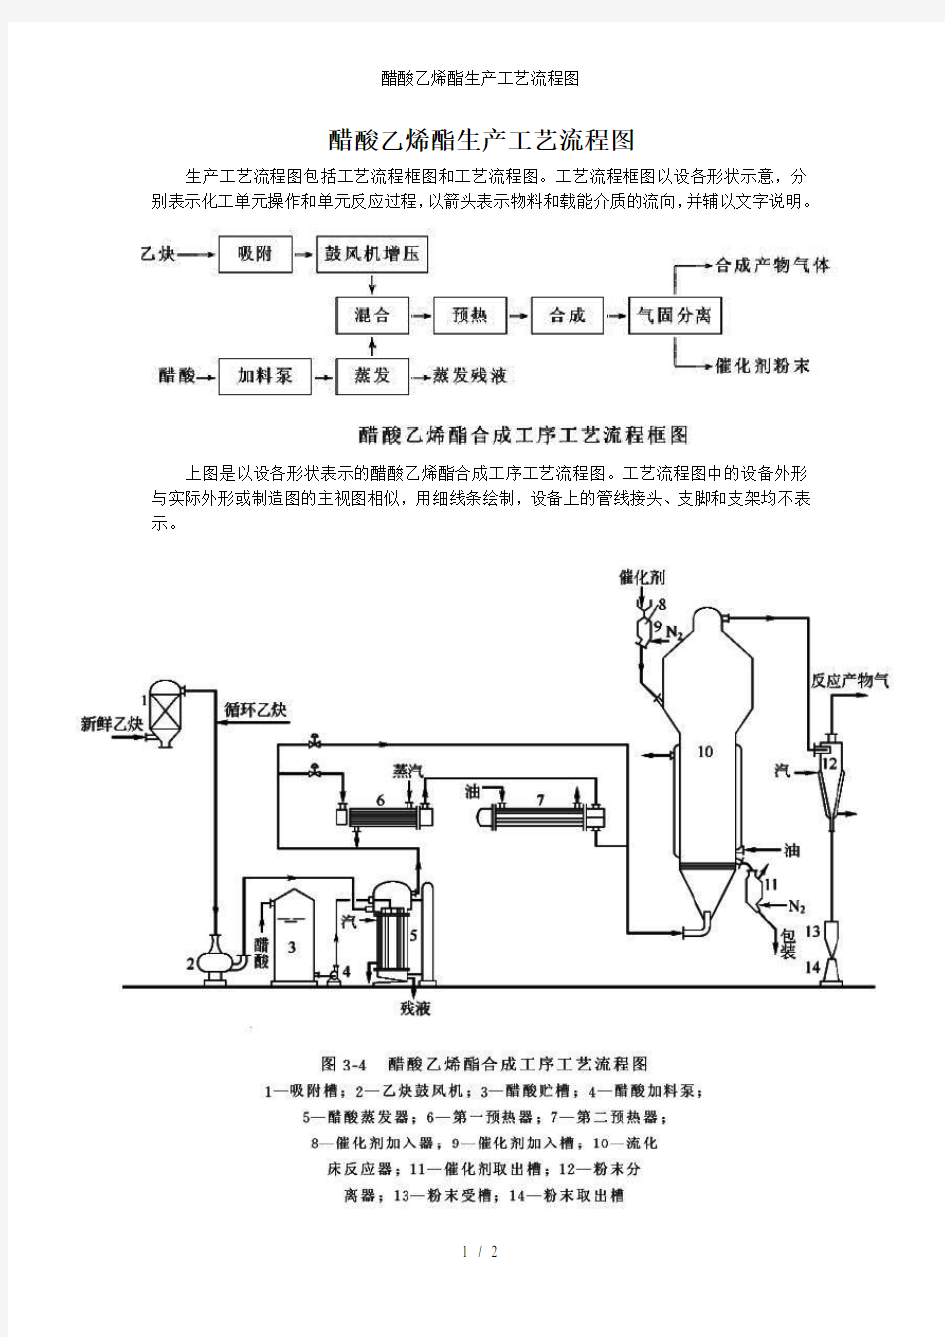 醋酸乙烯酯生产工艺流程图